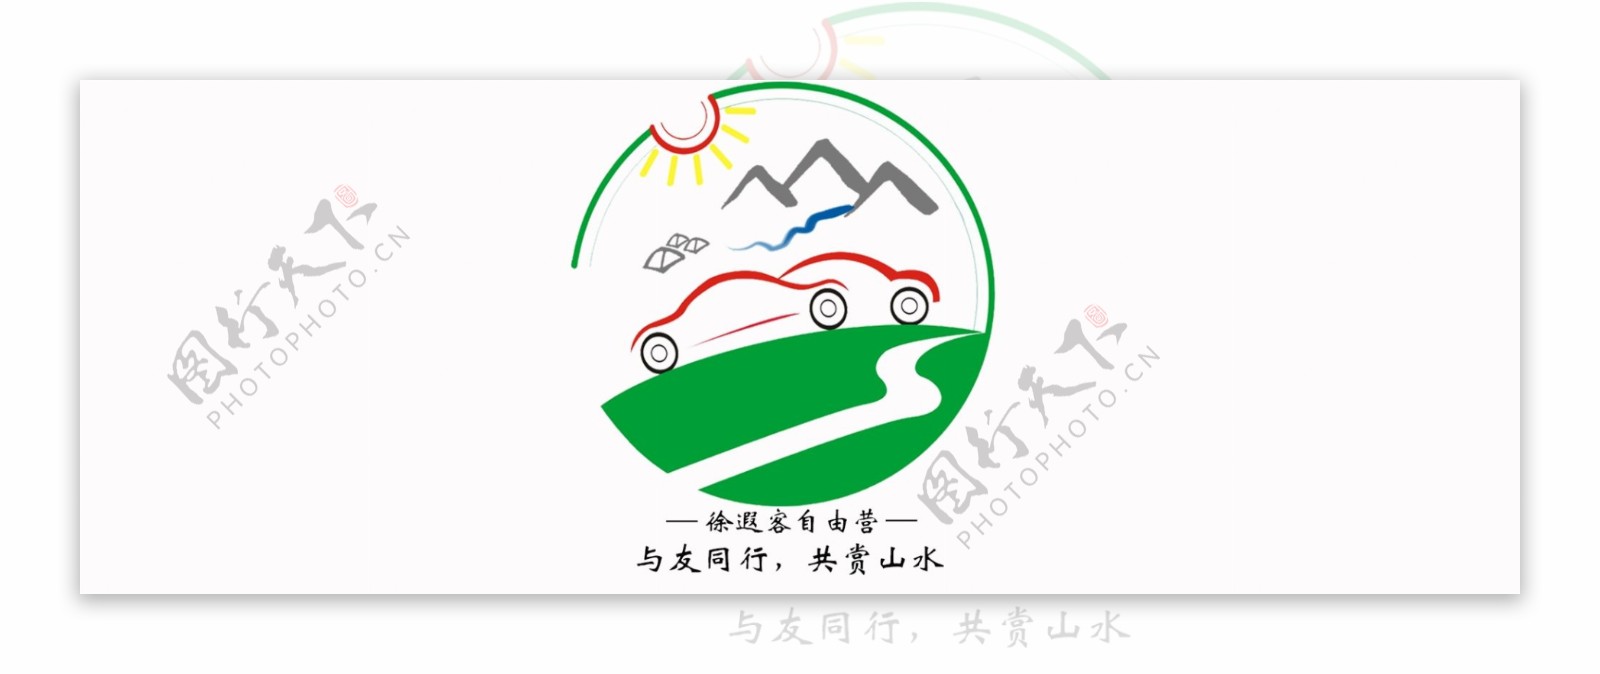 自驾游logo图标设计设计